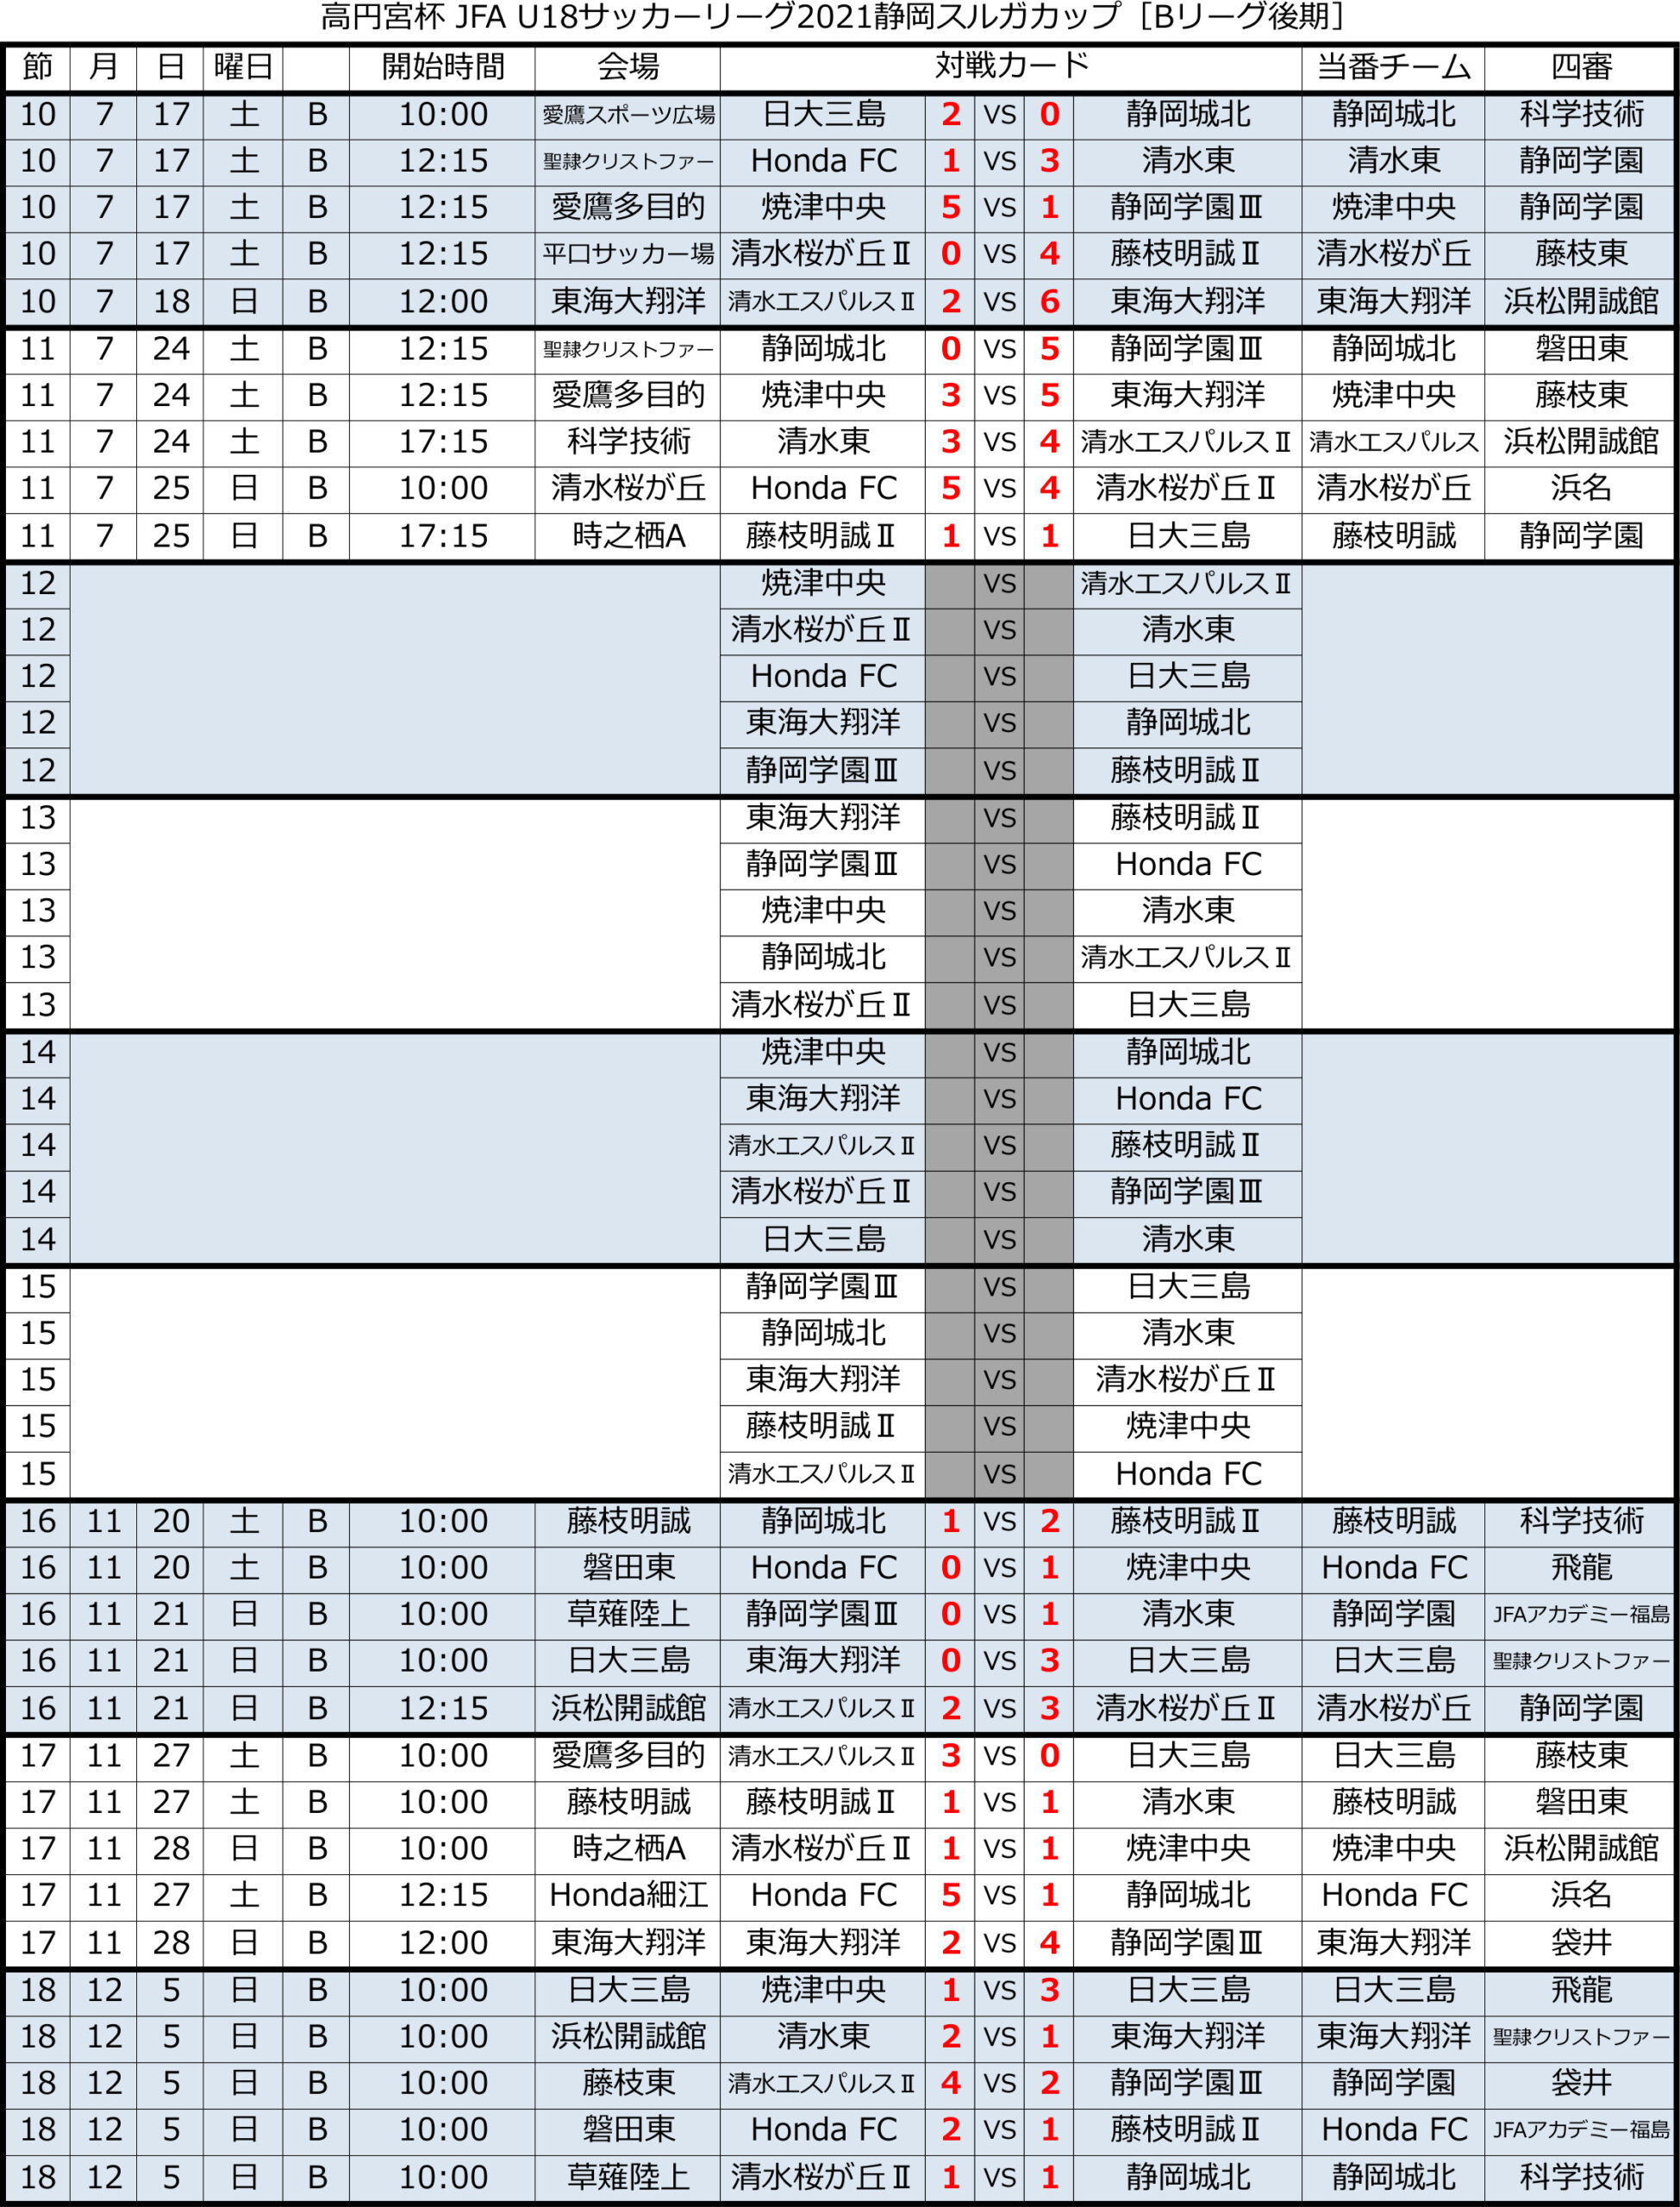 高円宮杯 JFA U-18サッカーリーグ2021 静岡 　Bリーグ後期 トーナメント表